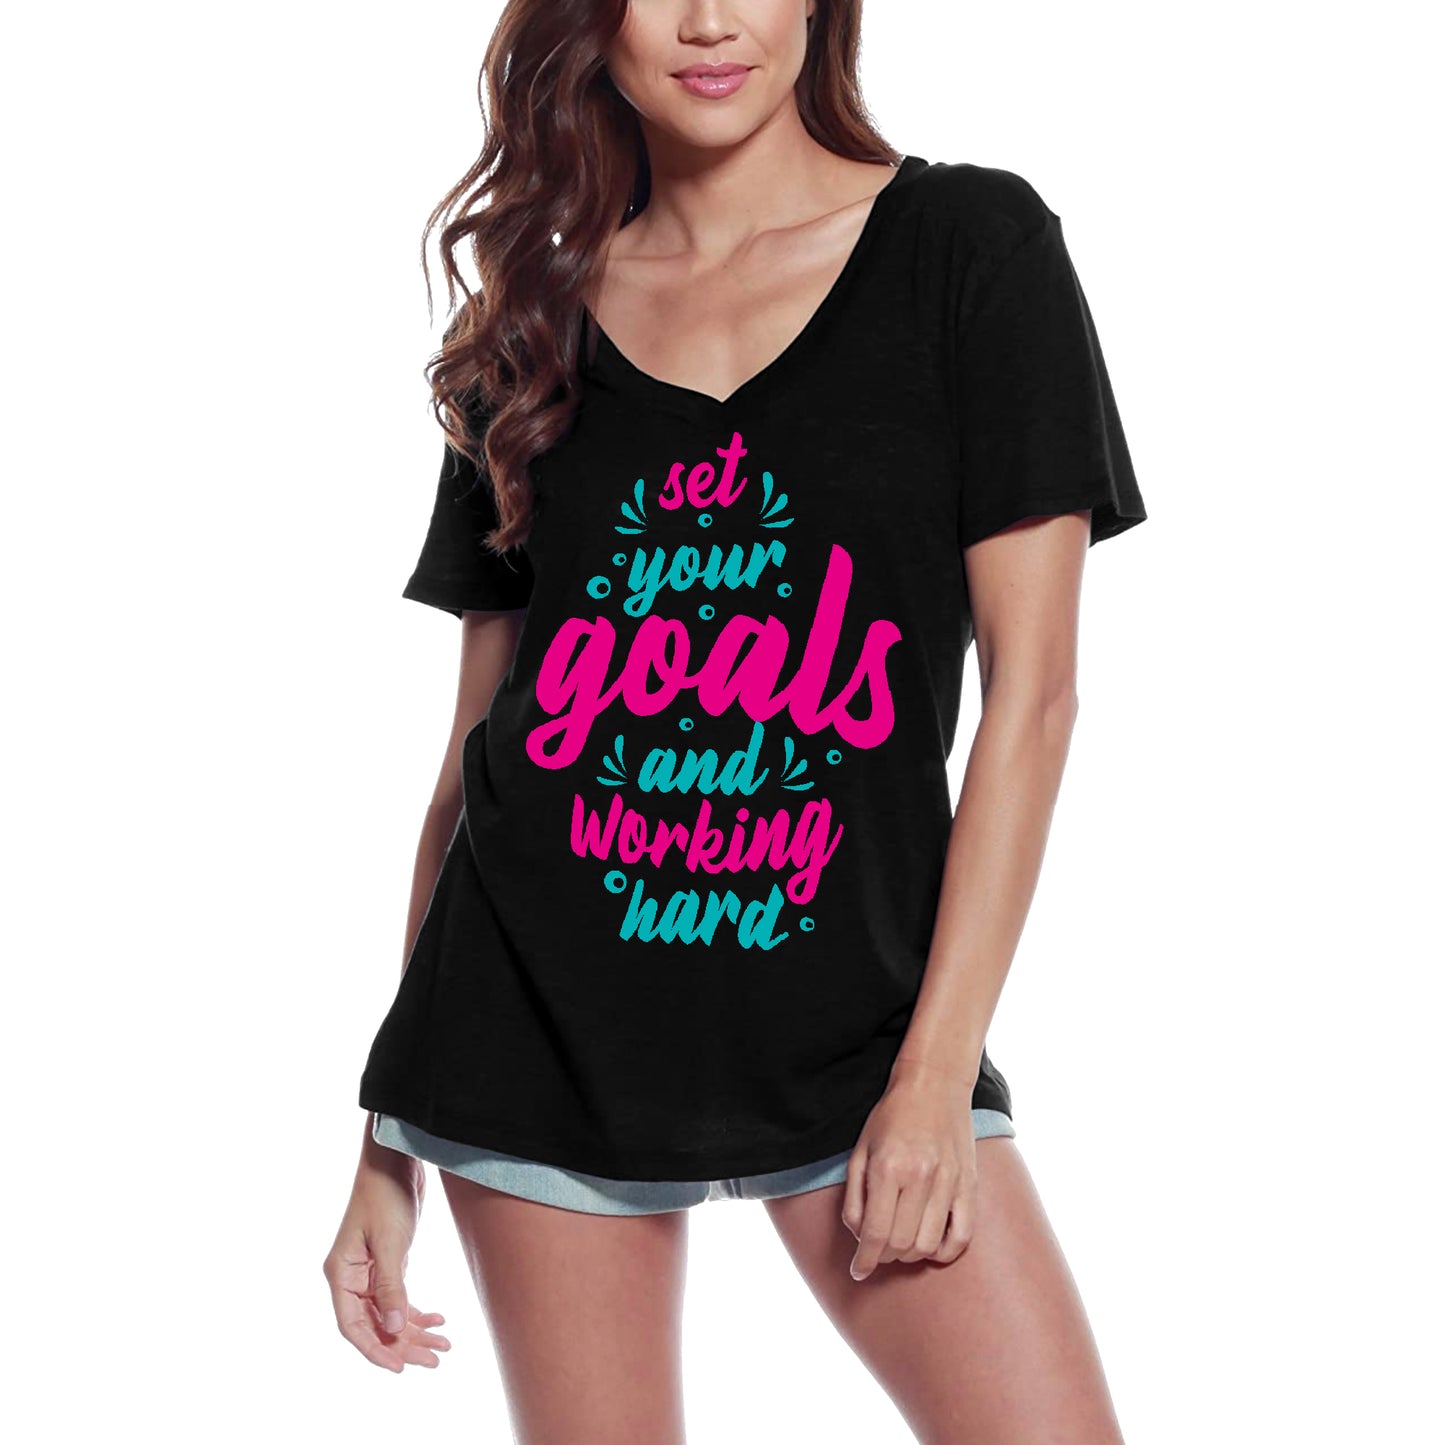 ULTRABASIC Women's T-Shirt Set Your Goals and Working Hard - Motivational Shirt